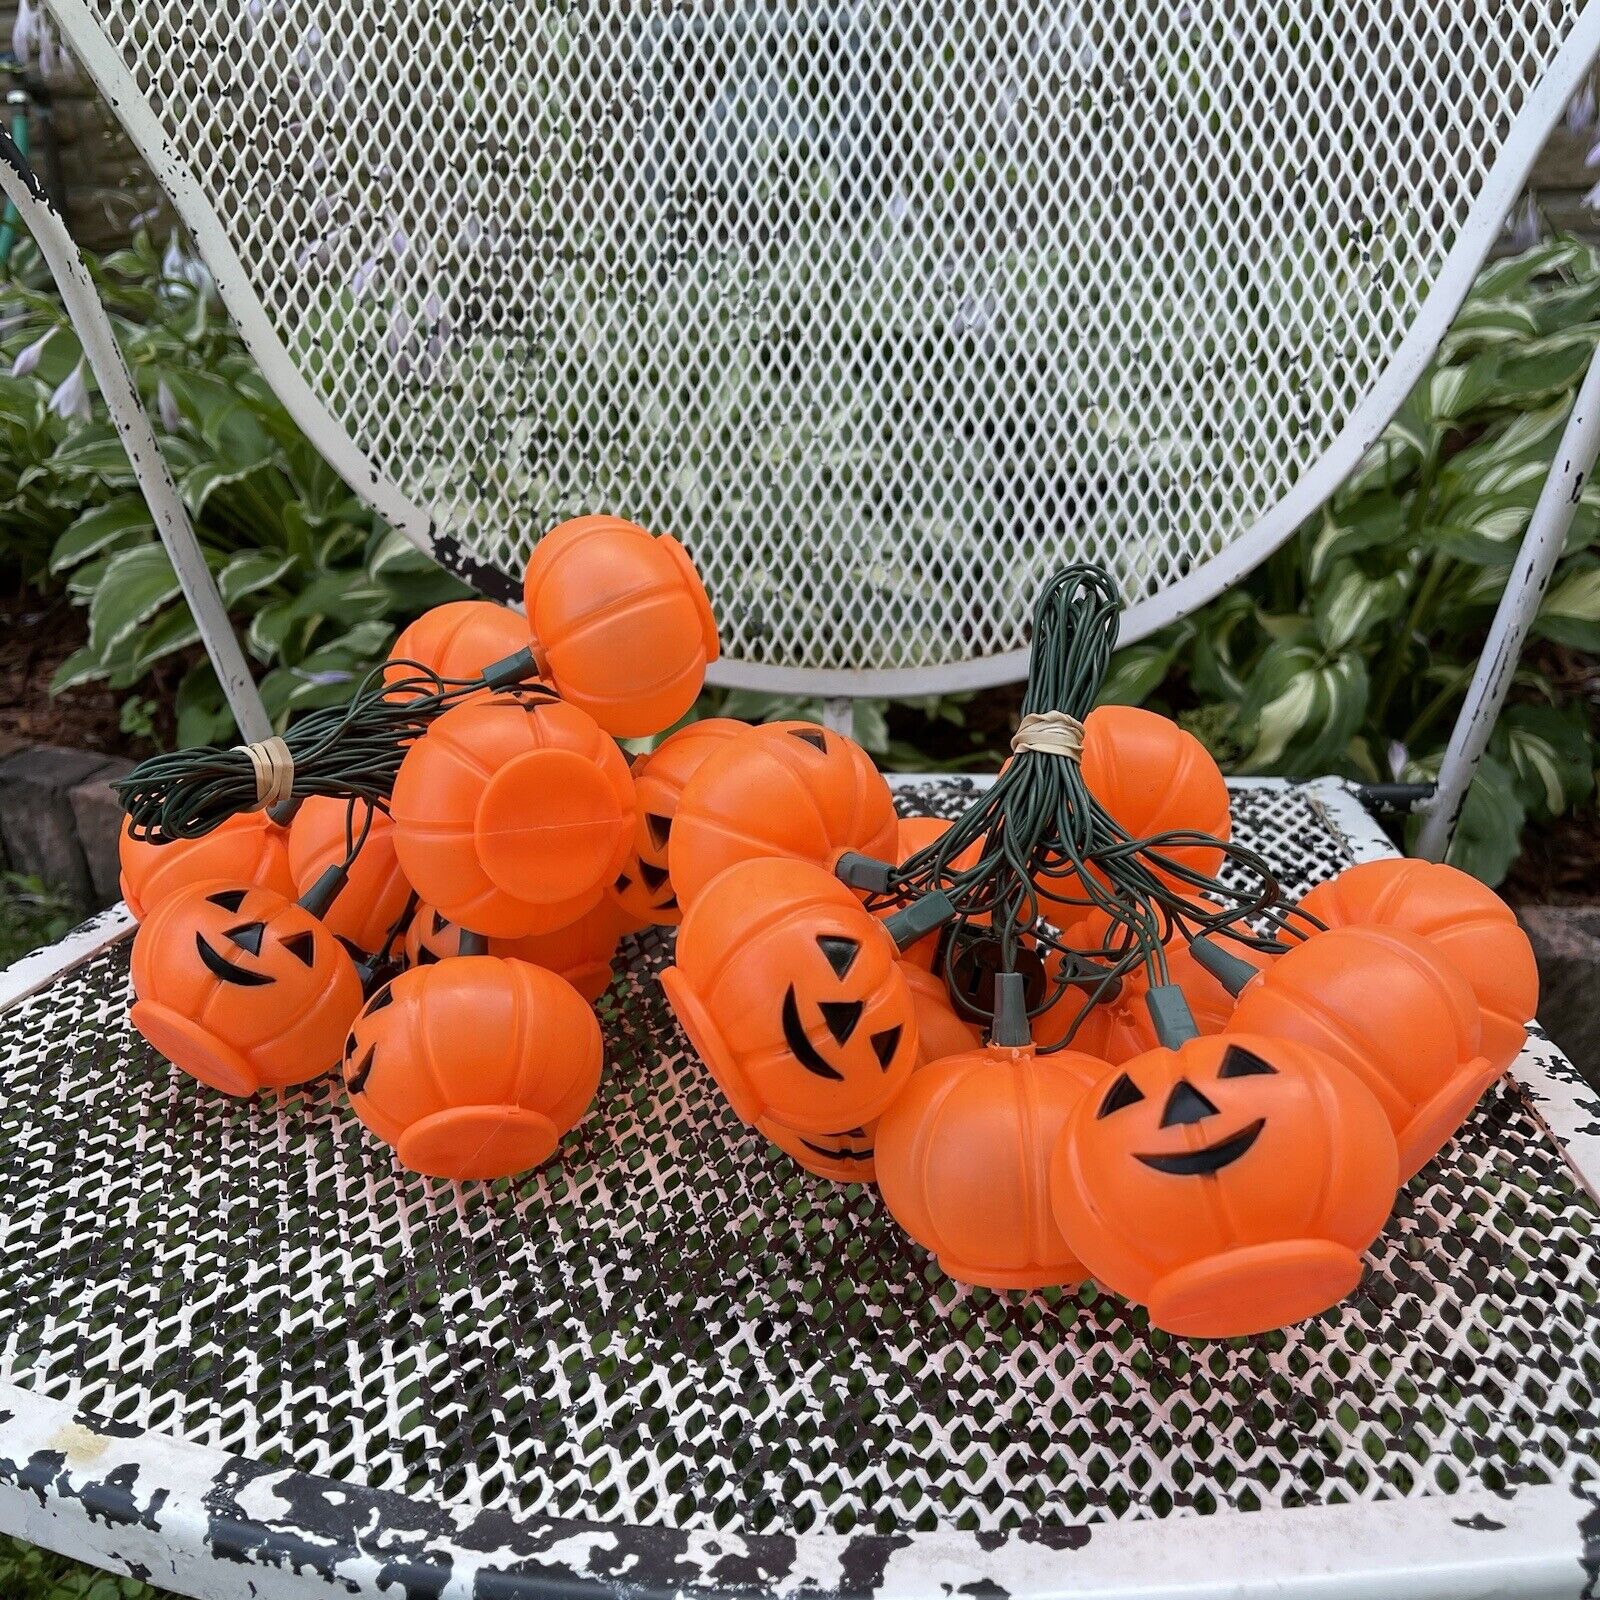 2 Sets Vintage Halloween Blow Mold Jack O Lantern Pumpkins String Light Set